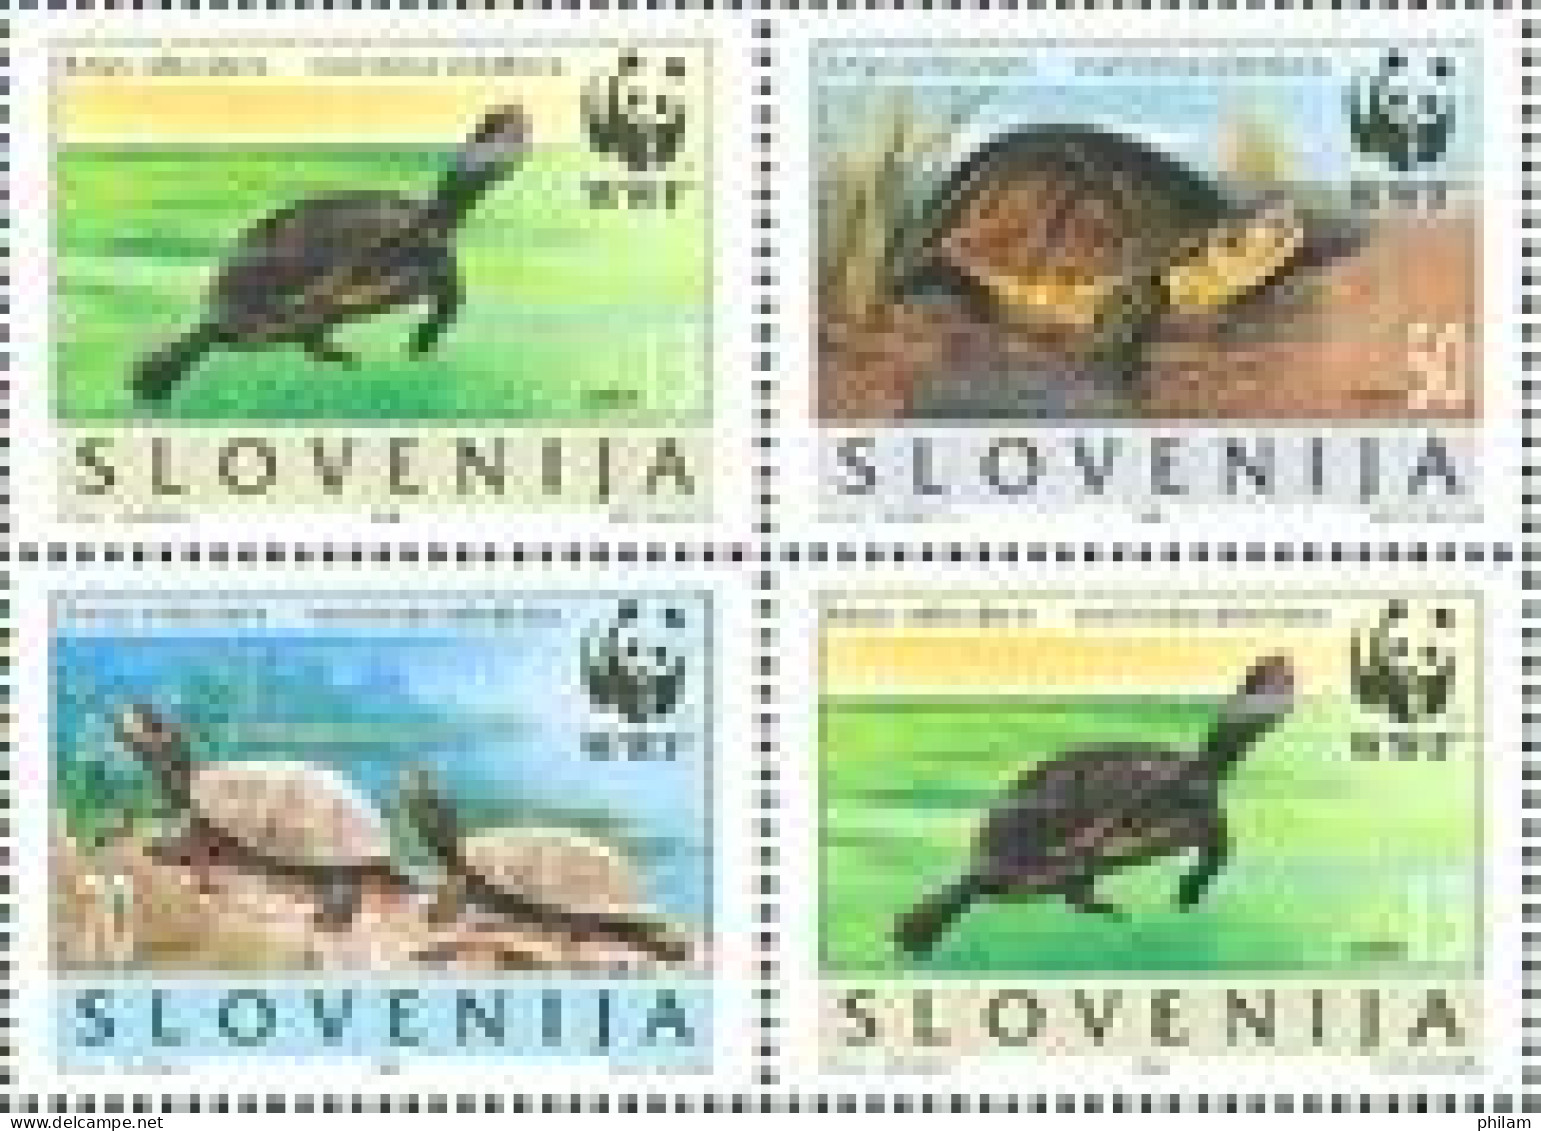 SLOVENIE 1996 - WWF - Tortues Emys Orbicularis - 4 V. - Eslovenia